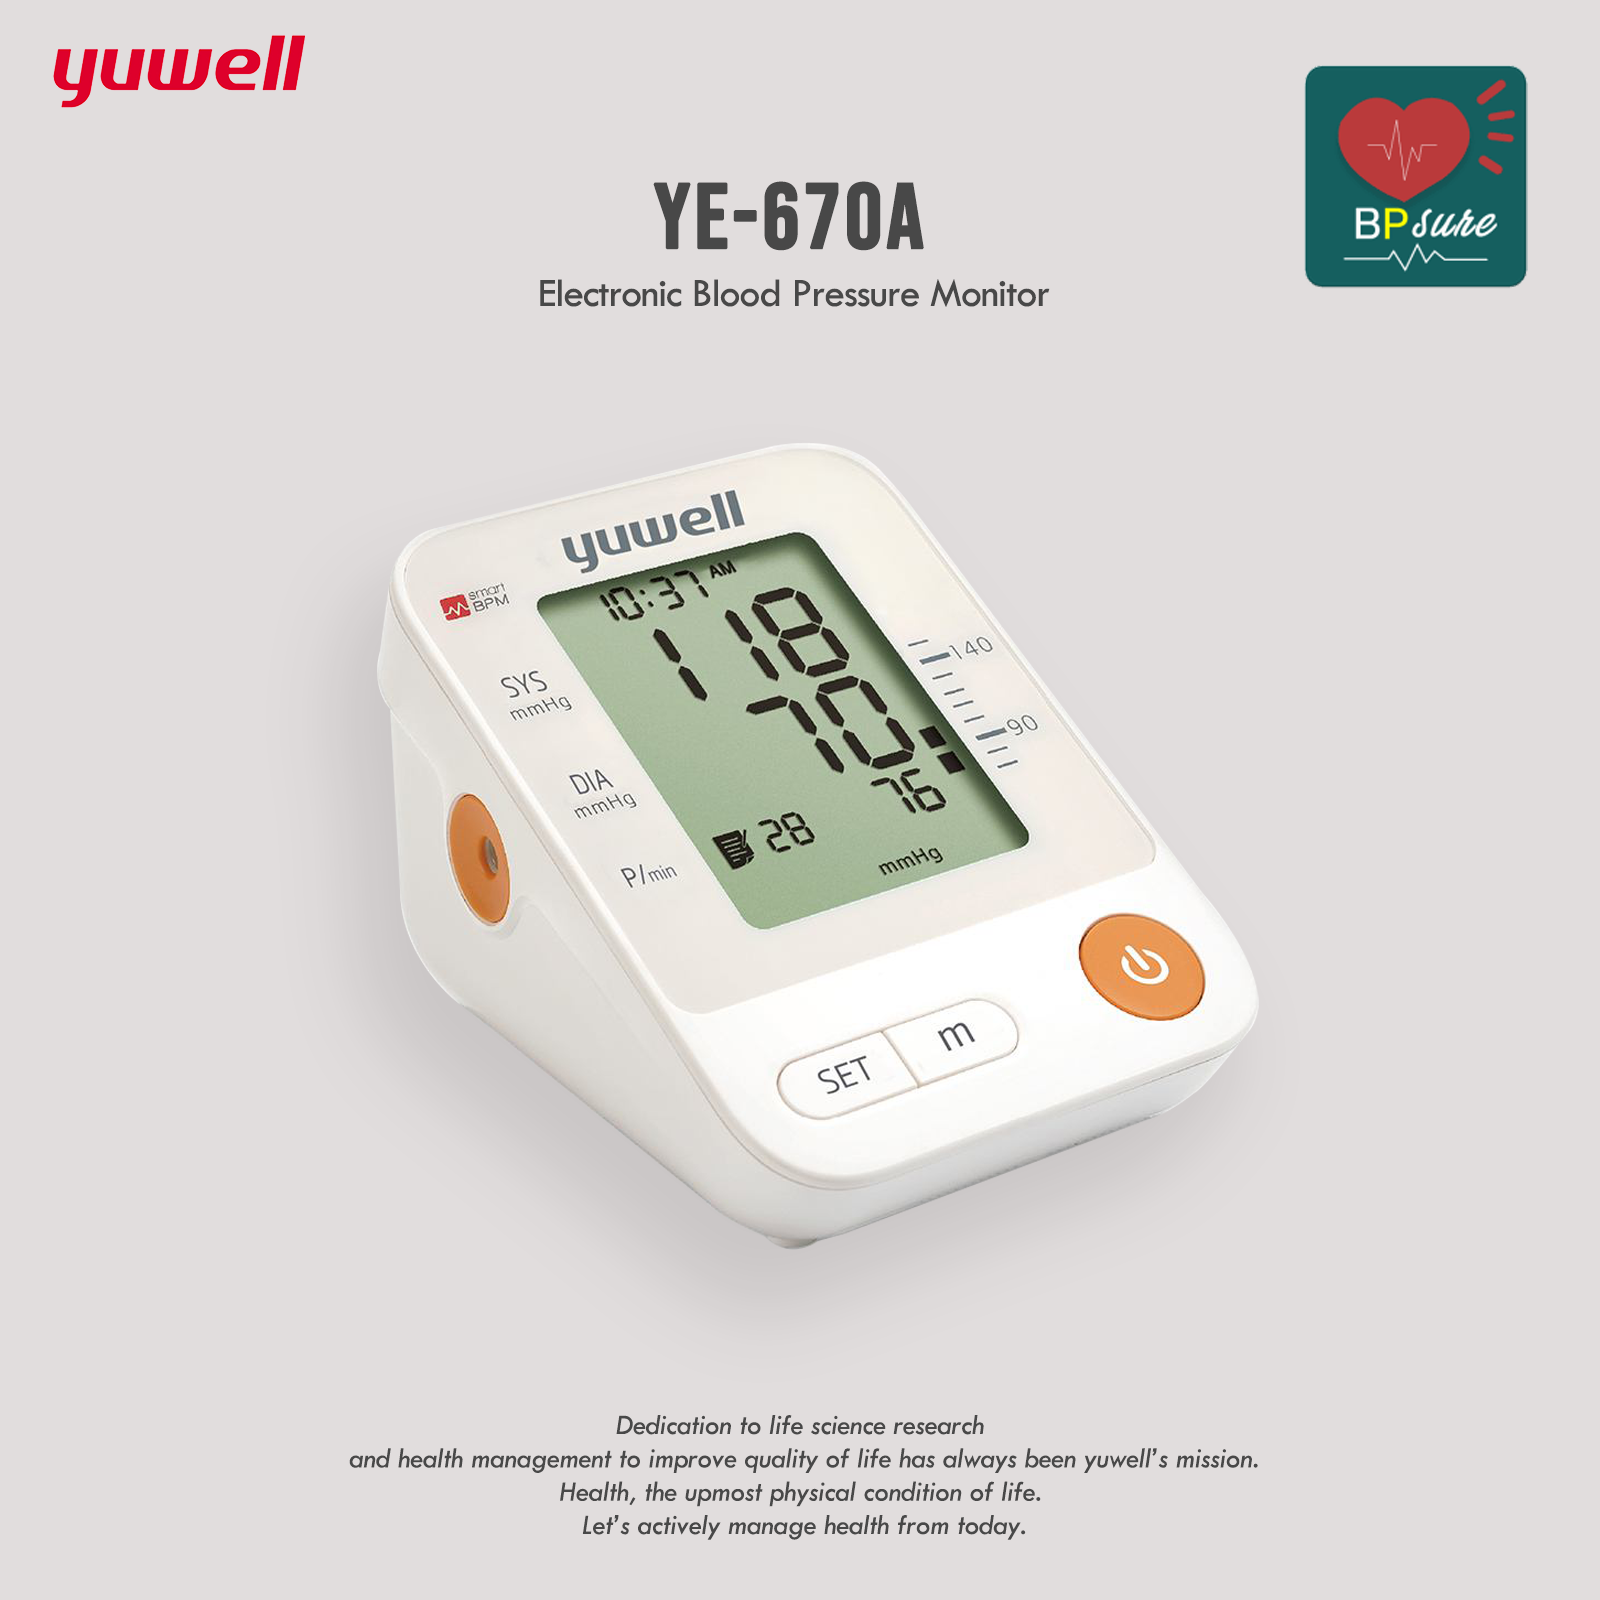 (รับประกัน 1 ปี) Yuwell เครื่องวัดความดันต้นแขน YE670A (เชื่อมต่อแอพลิเคชั่น BP Sure ได้) ตัวใหญ่ จอสว่าง Sphygmomanometer Blood Pressure Meter